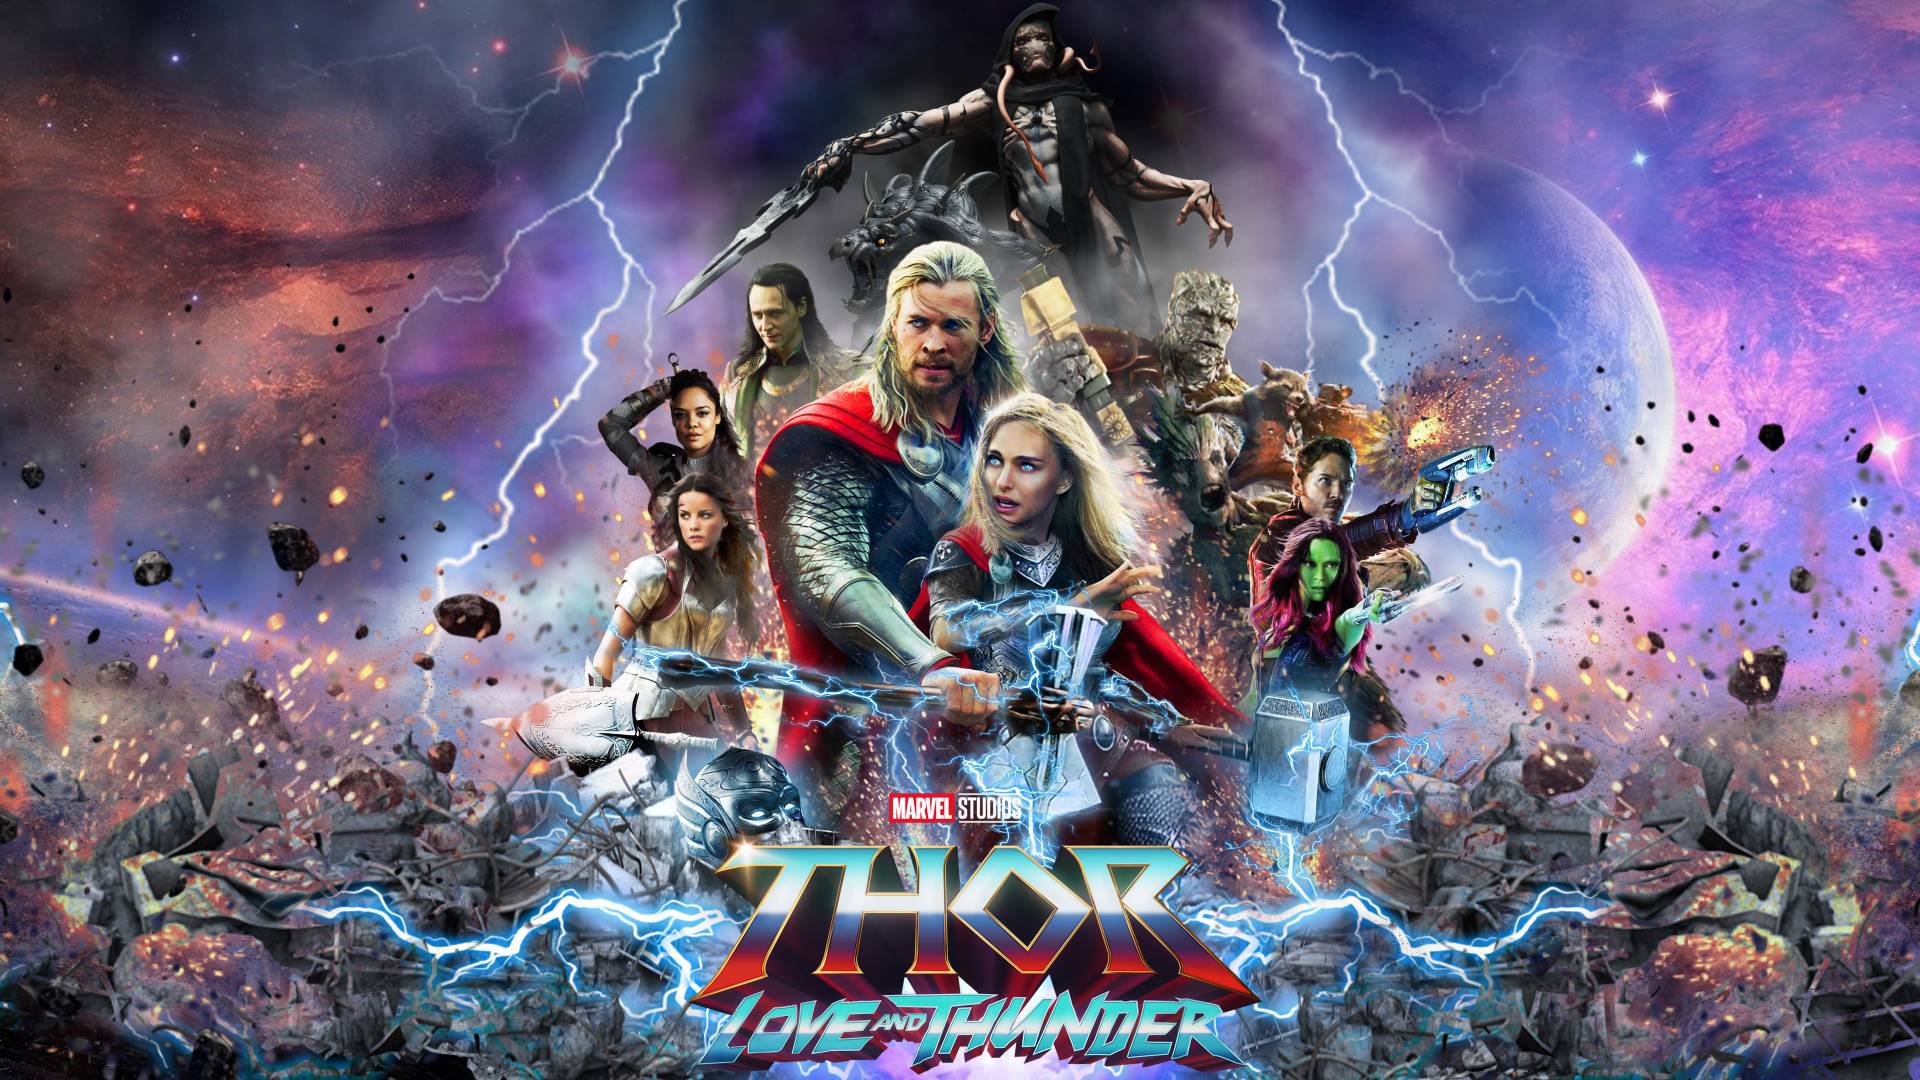 «Thor: Love and Thunder» – Κυκλοφόρησε το νέο trailer που δίνει μια ματιά στους ήρωες της ταινίας